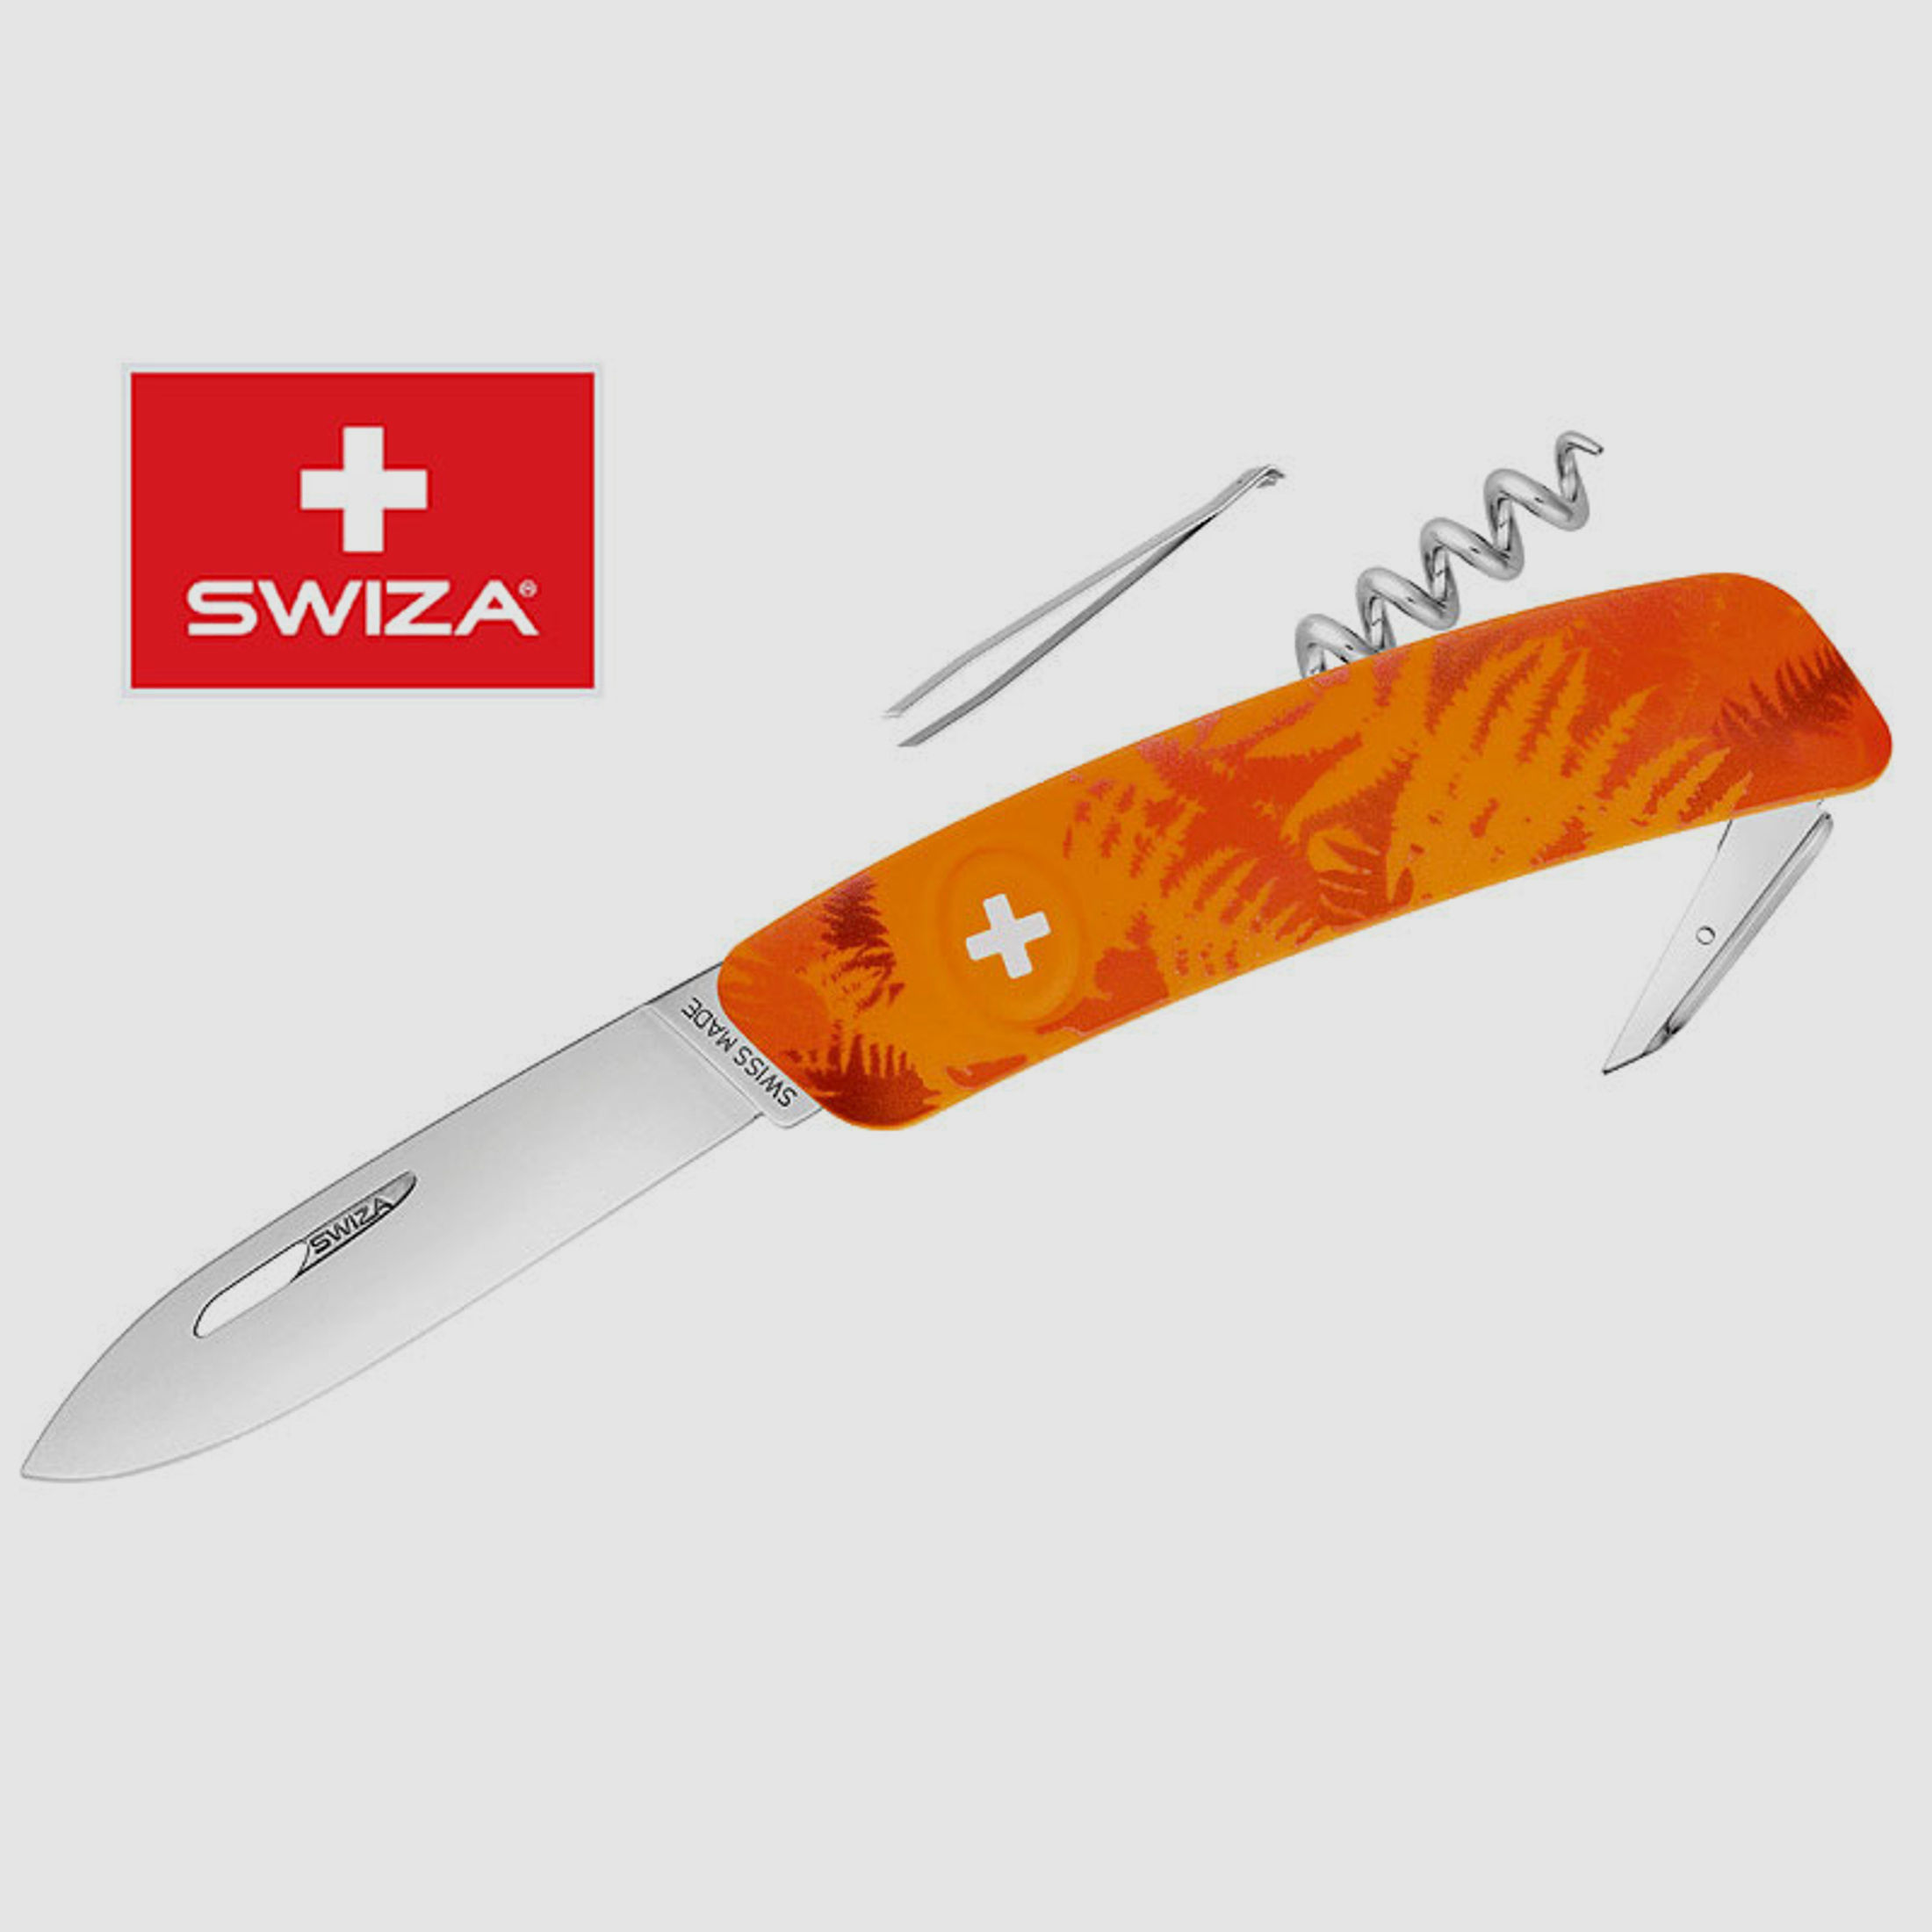 SWIZA Schweizer Messer FILIX D01 CAMO FARN ORANGE, Edelstahl 440, 6 Funktionen, Korkenzieher